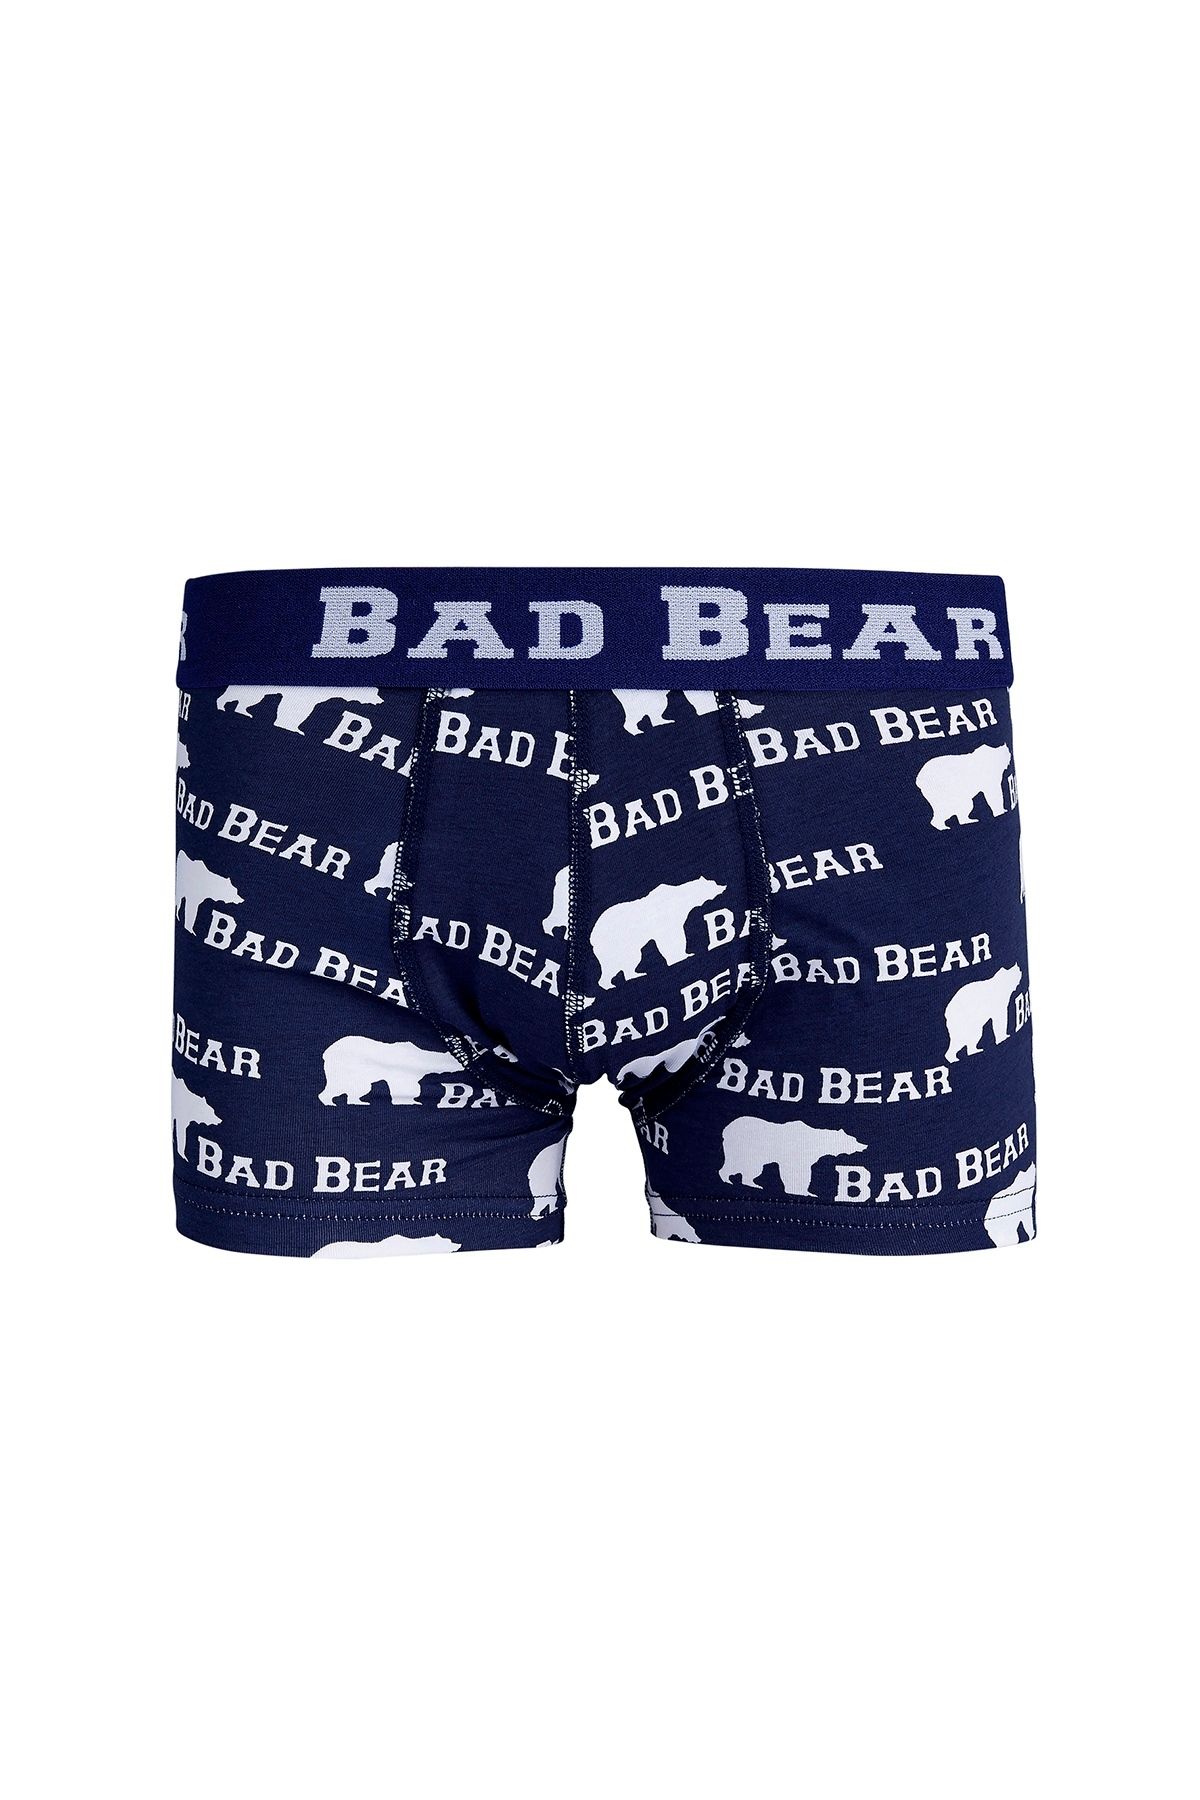 Bad Bear 18.01.03.004-c07 Bear Erkek Boxer